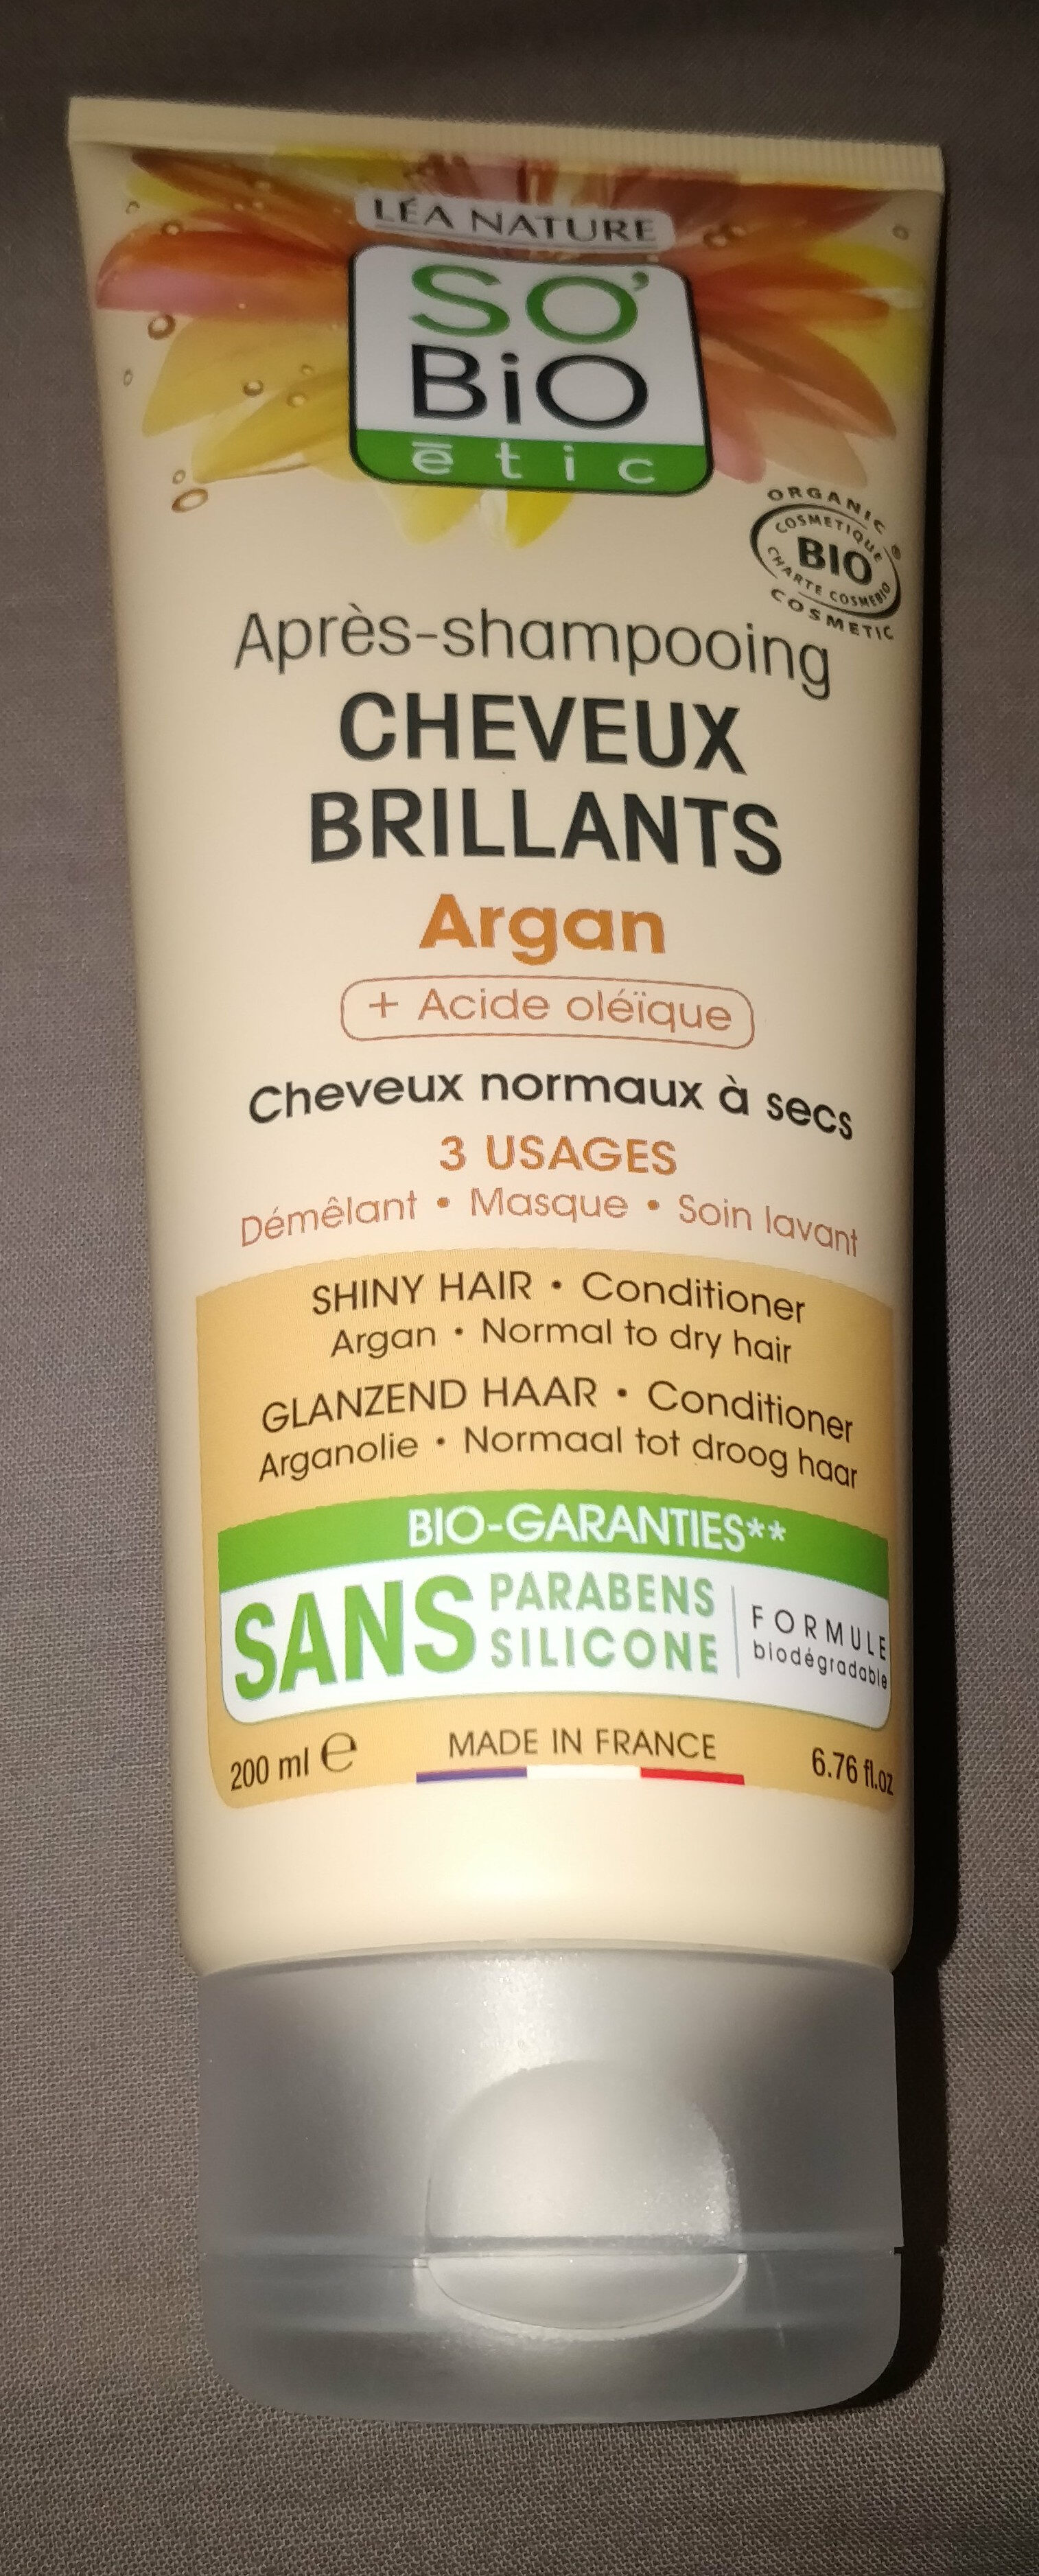 Après-Shampoing Cheveux Brillants - Produit - fr